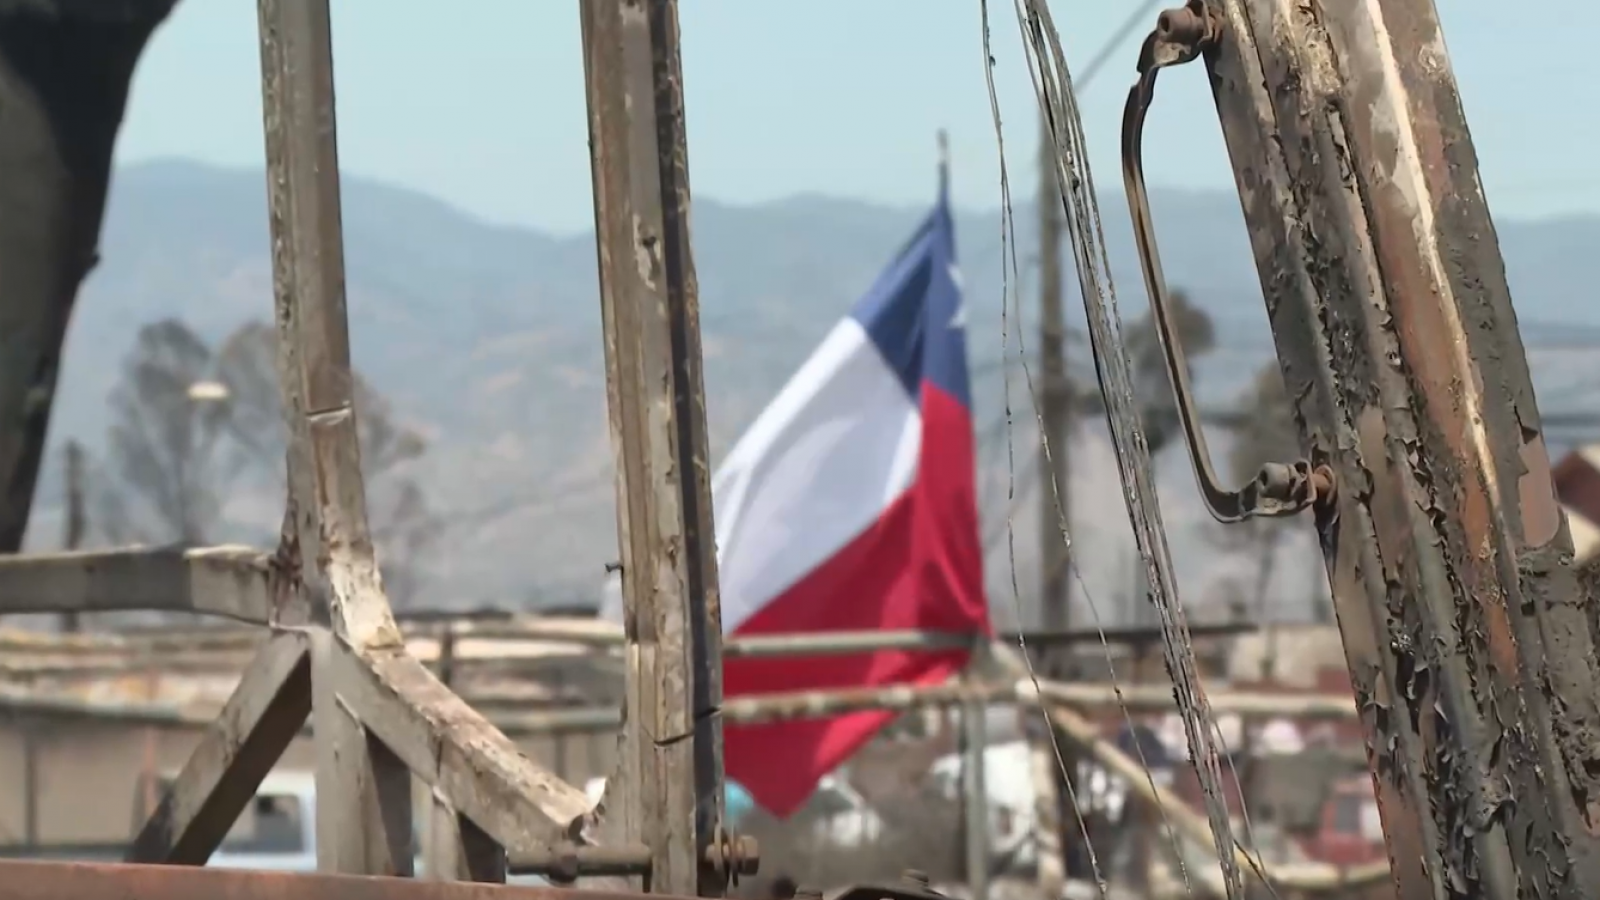 Aumentan en Chile lo robos y violencia tras los incendios